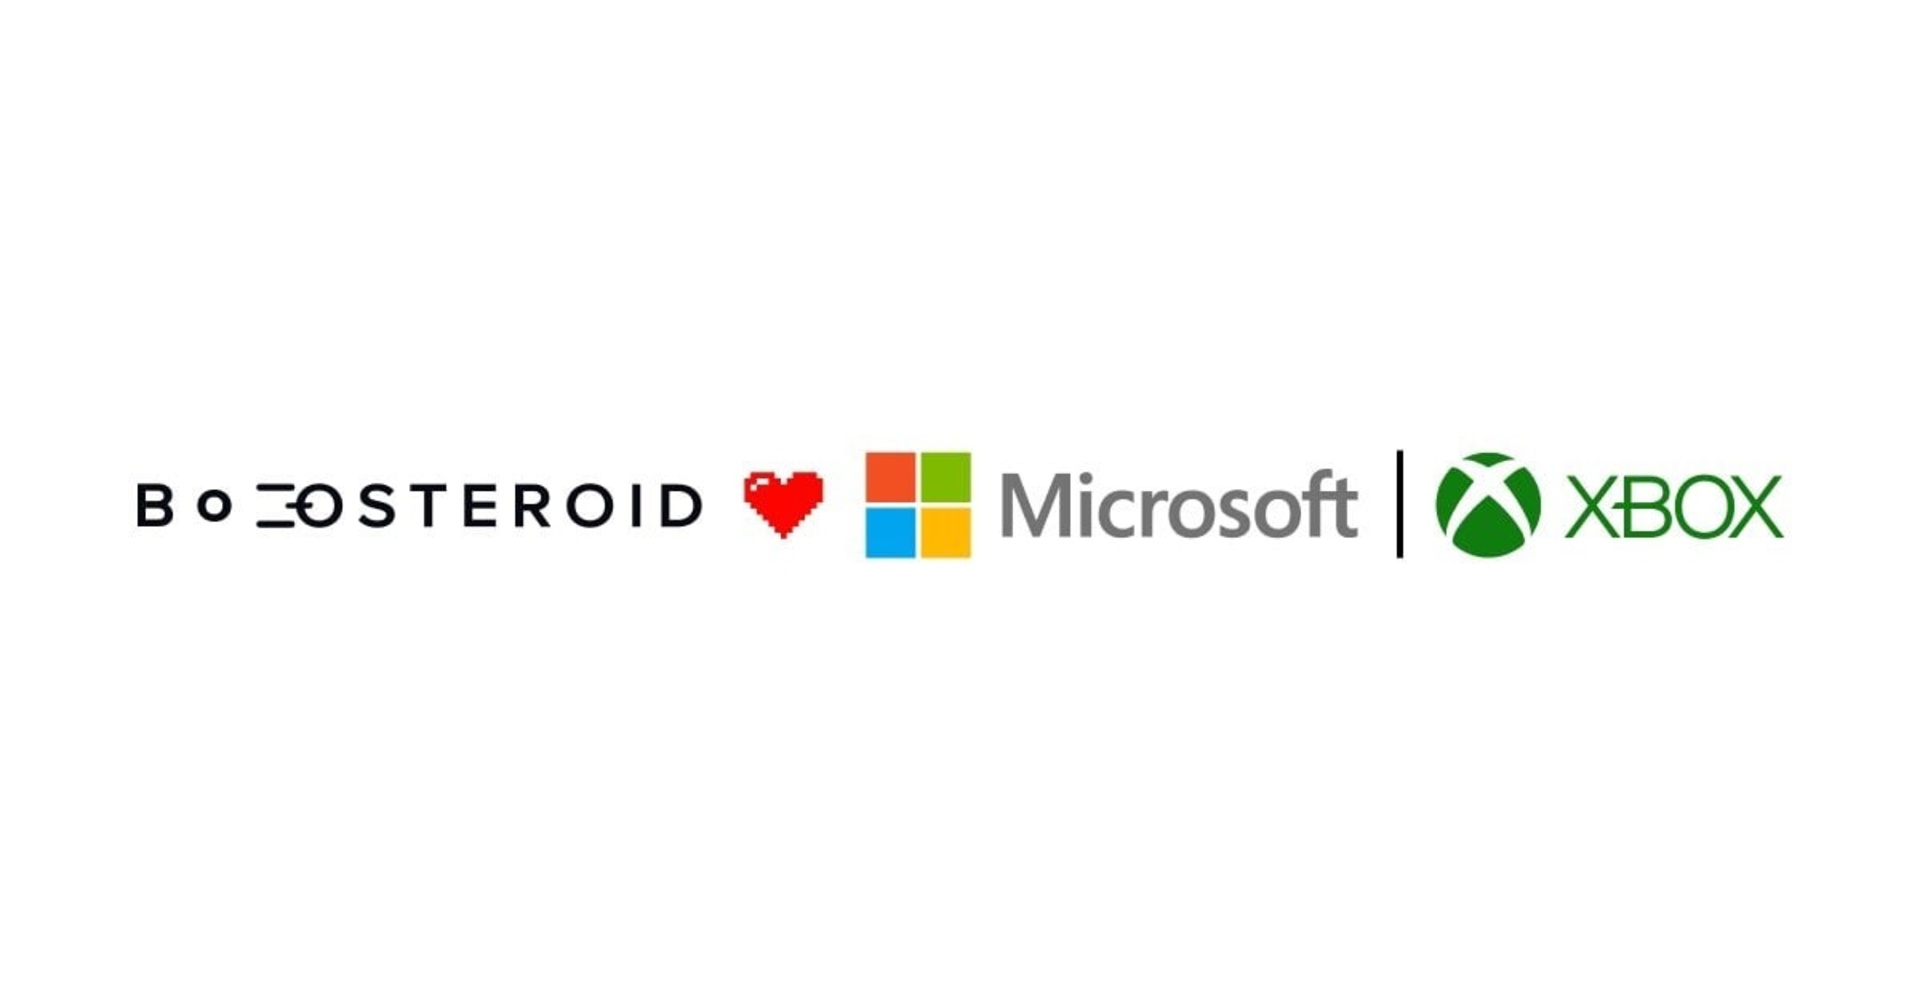 Microsoft-ը 10-ամյա պայմանագիր է կնքել ուկրաինական Boosteroid ամպային ծառայության հետ